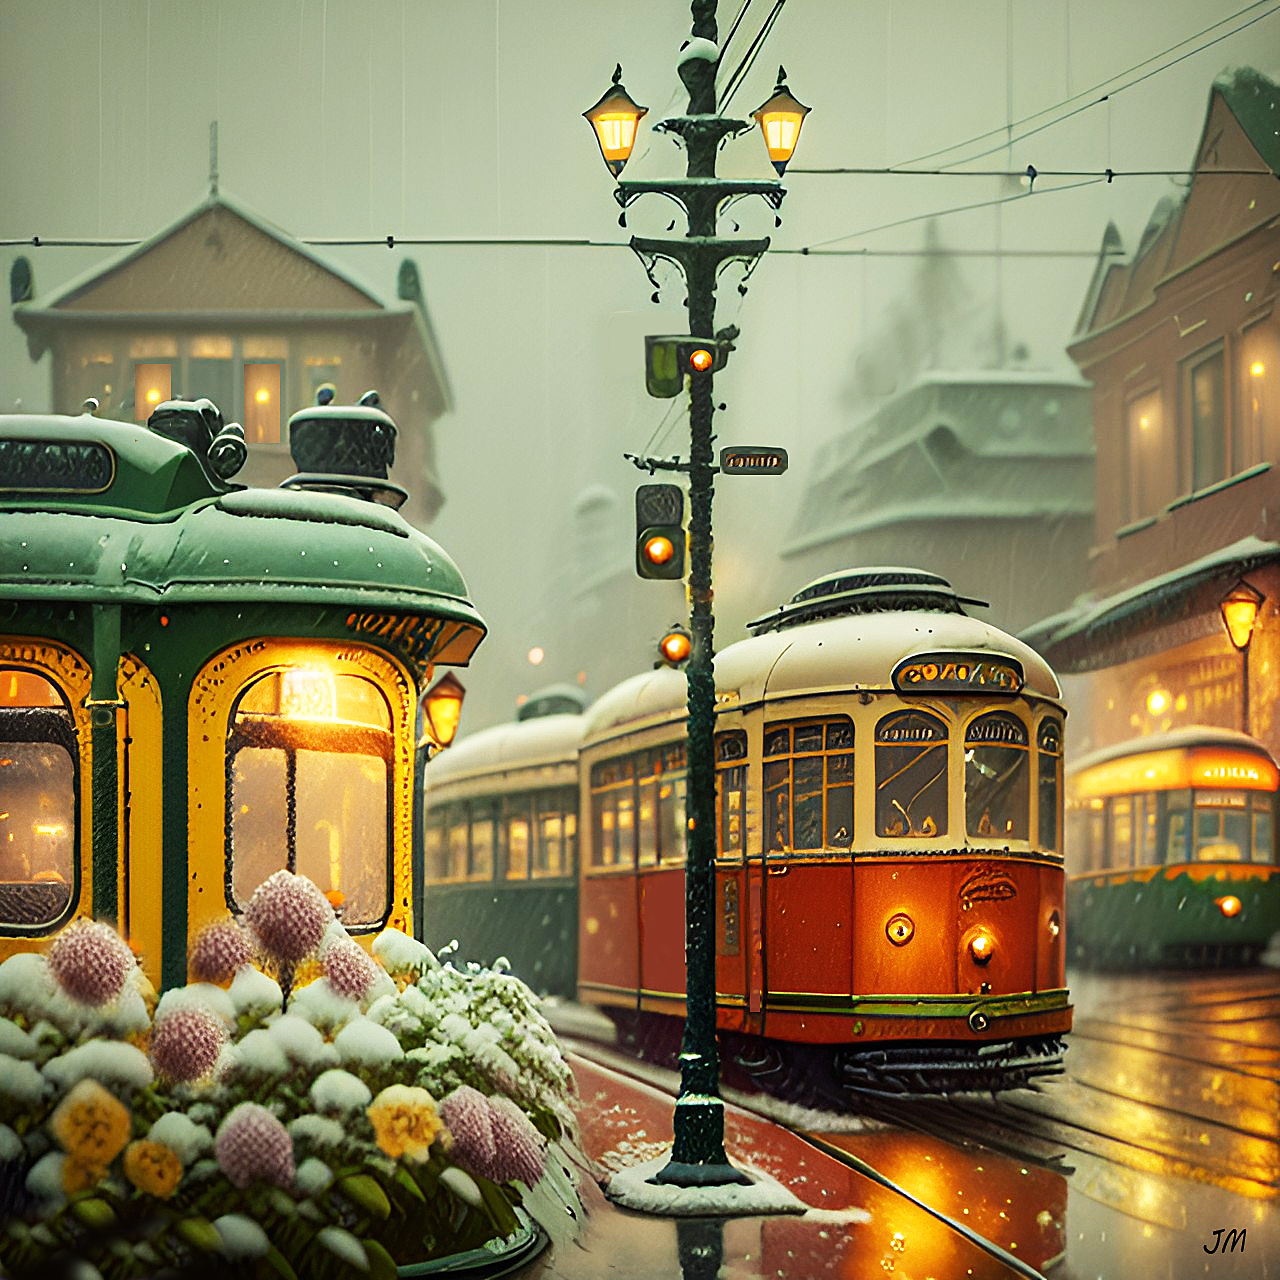 Snowy Old Vienna Street by Canadragon on DeviantArt